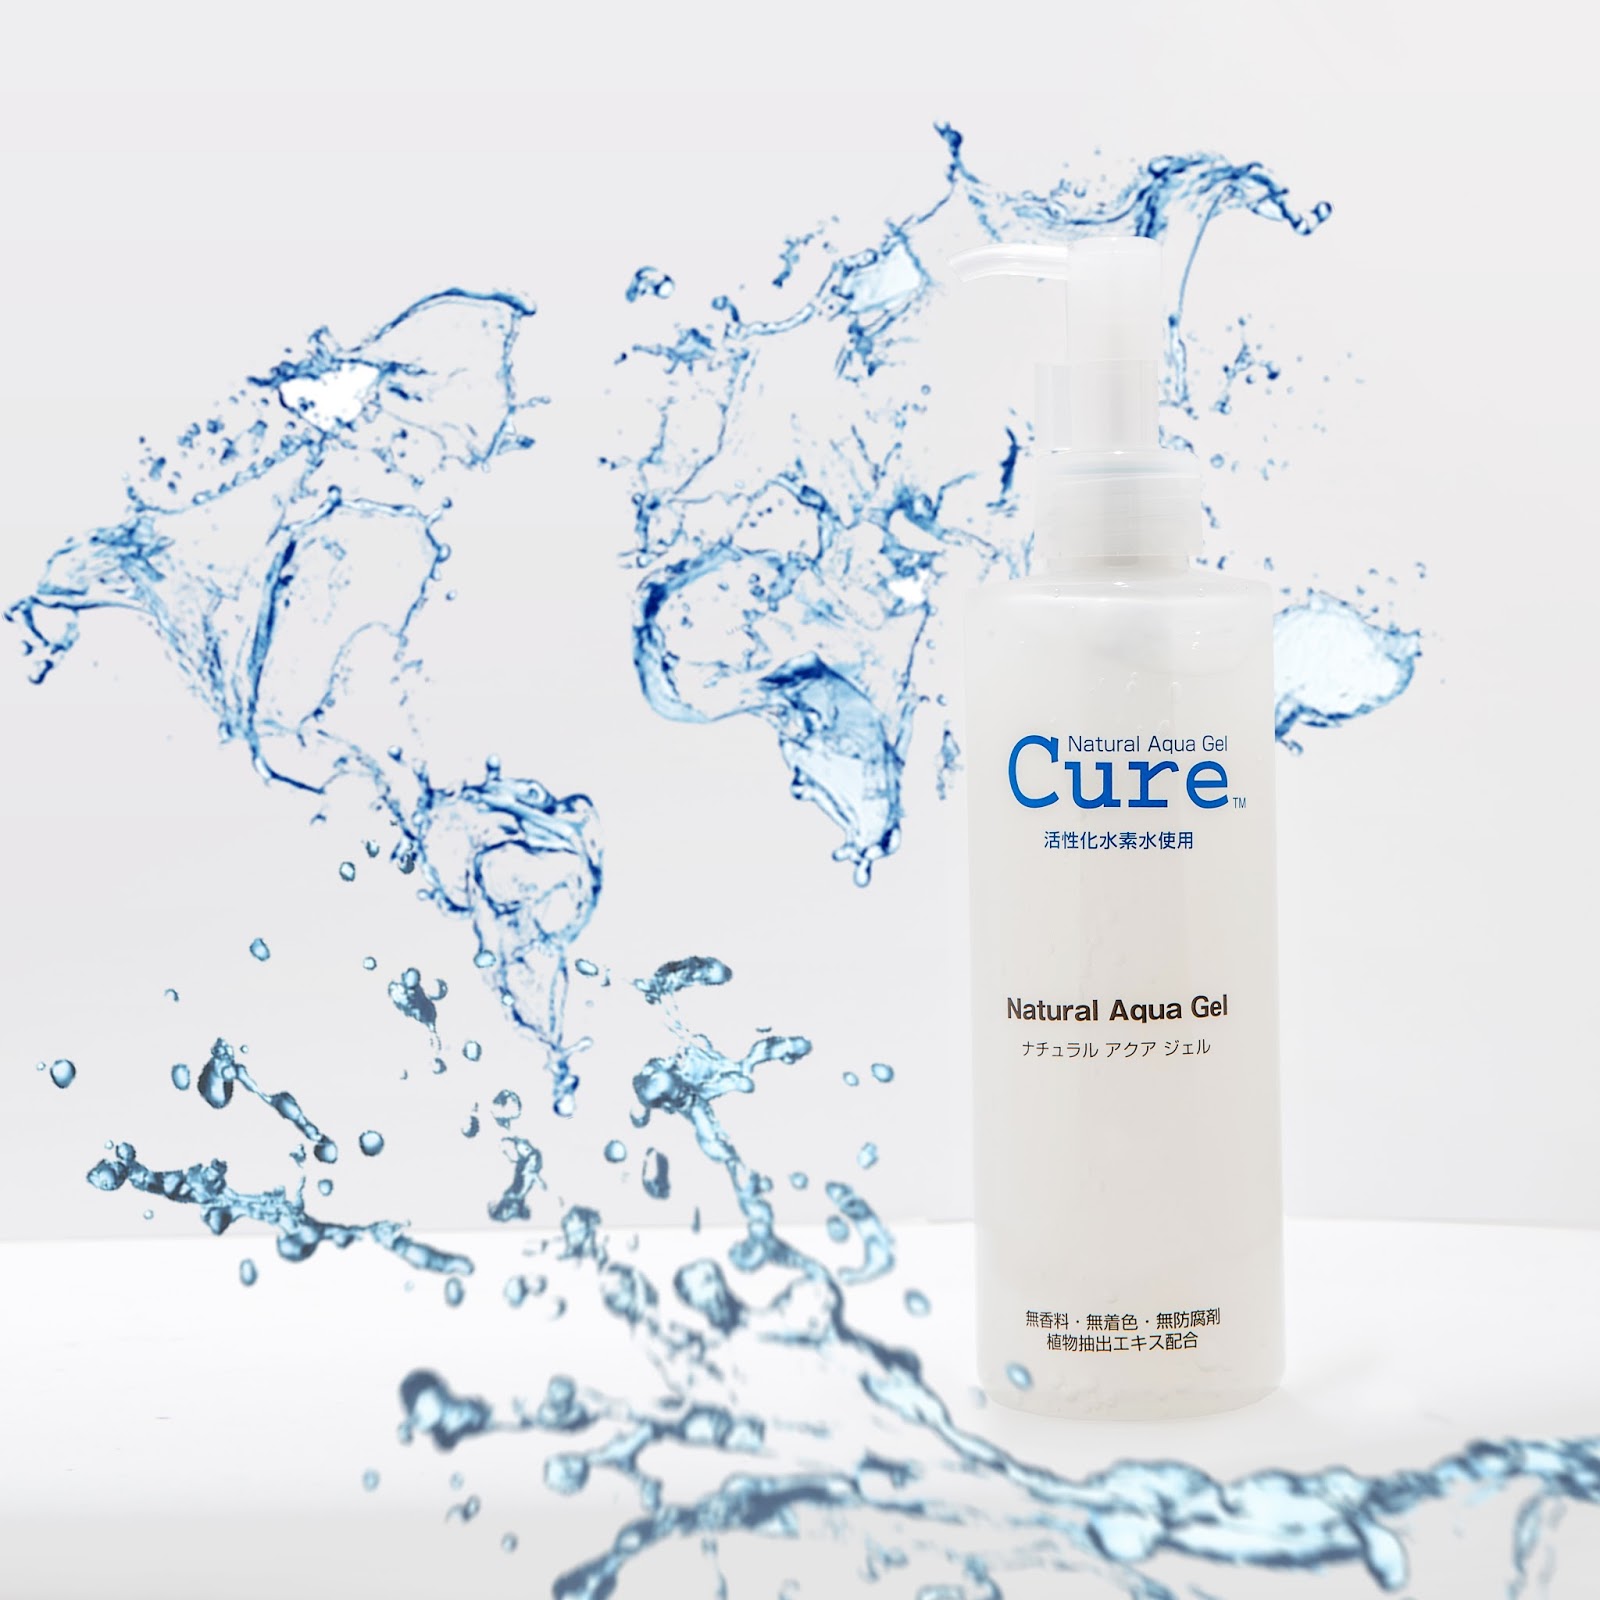 Cure natural Aqua Gel. Cure пилинг. Cure Aqua Gel для лица Япония. Natural Aqua Gel Cure фирма чья.